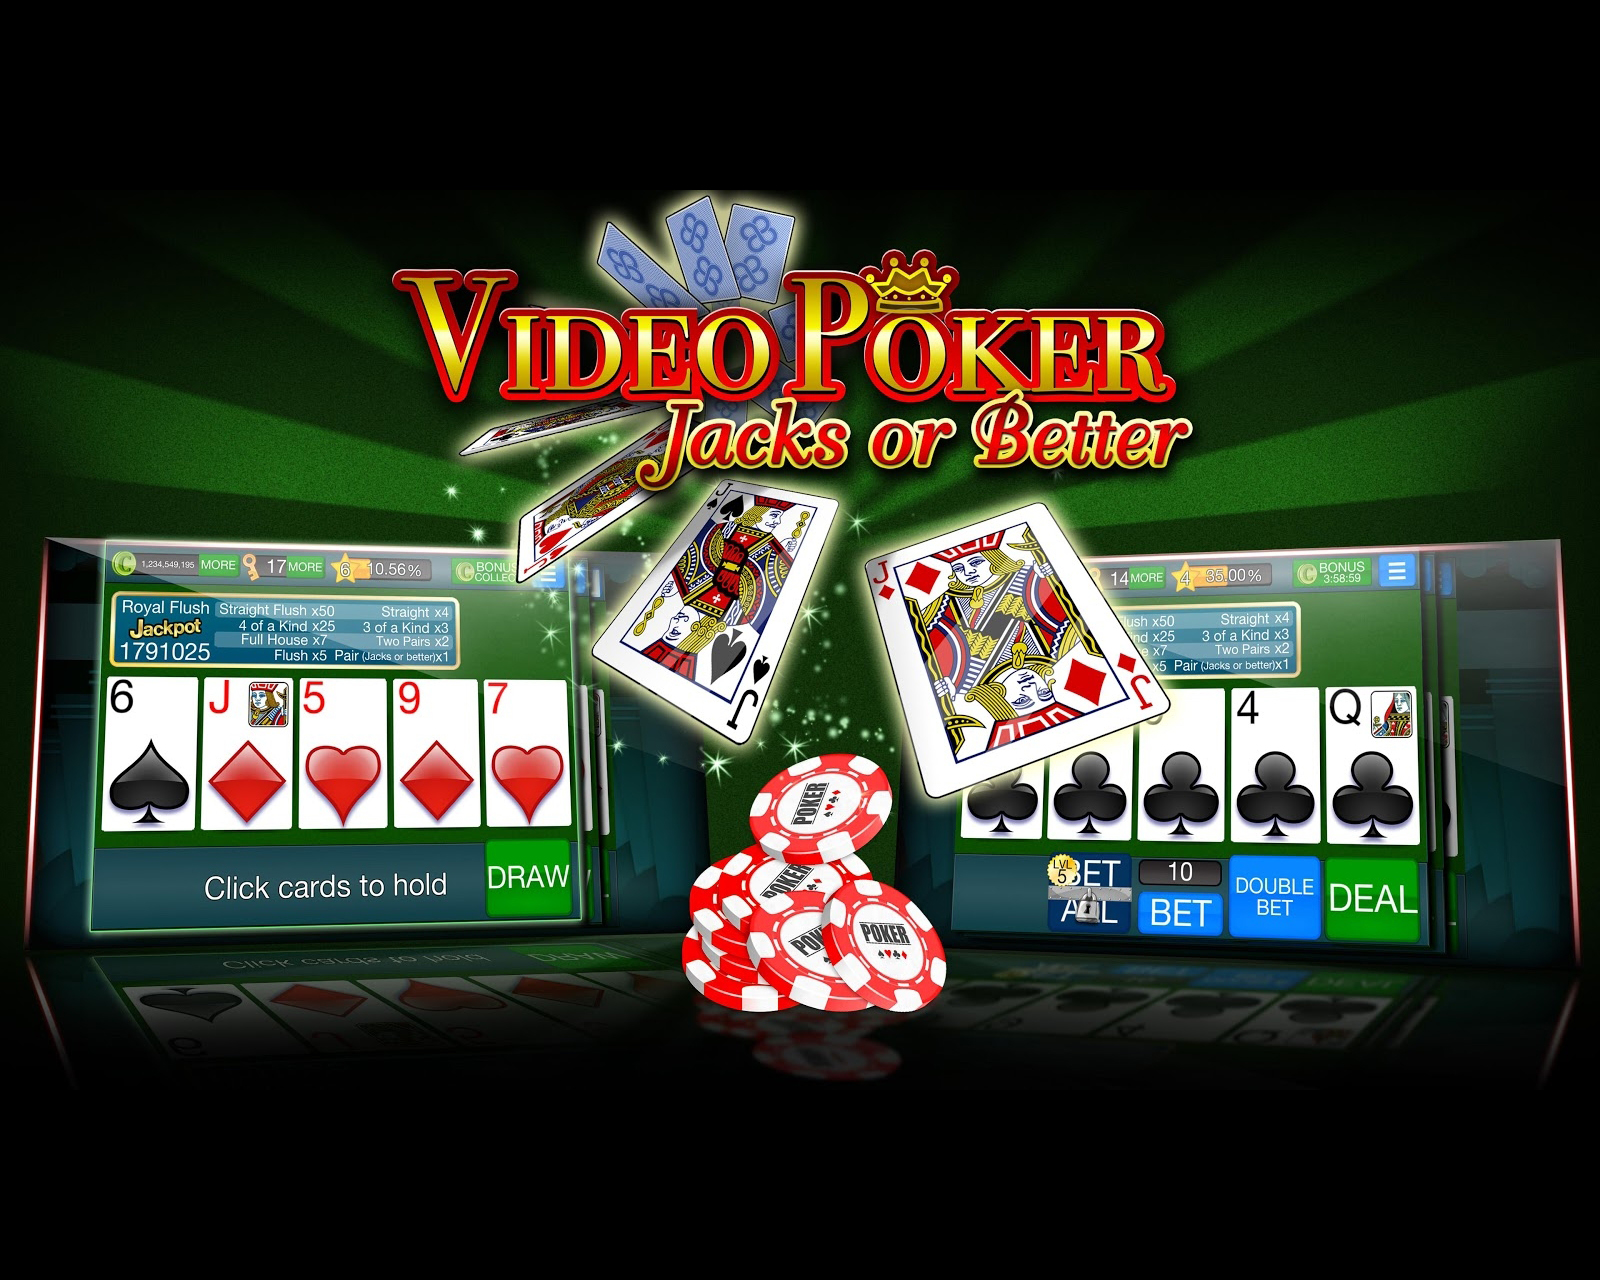 видео как правильно играть в казино